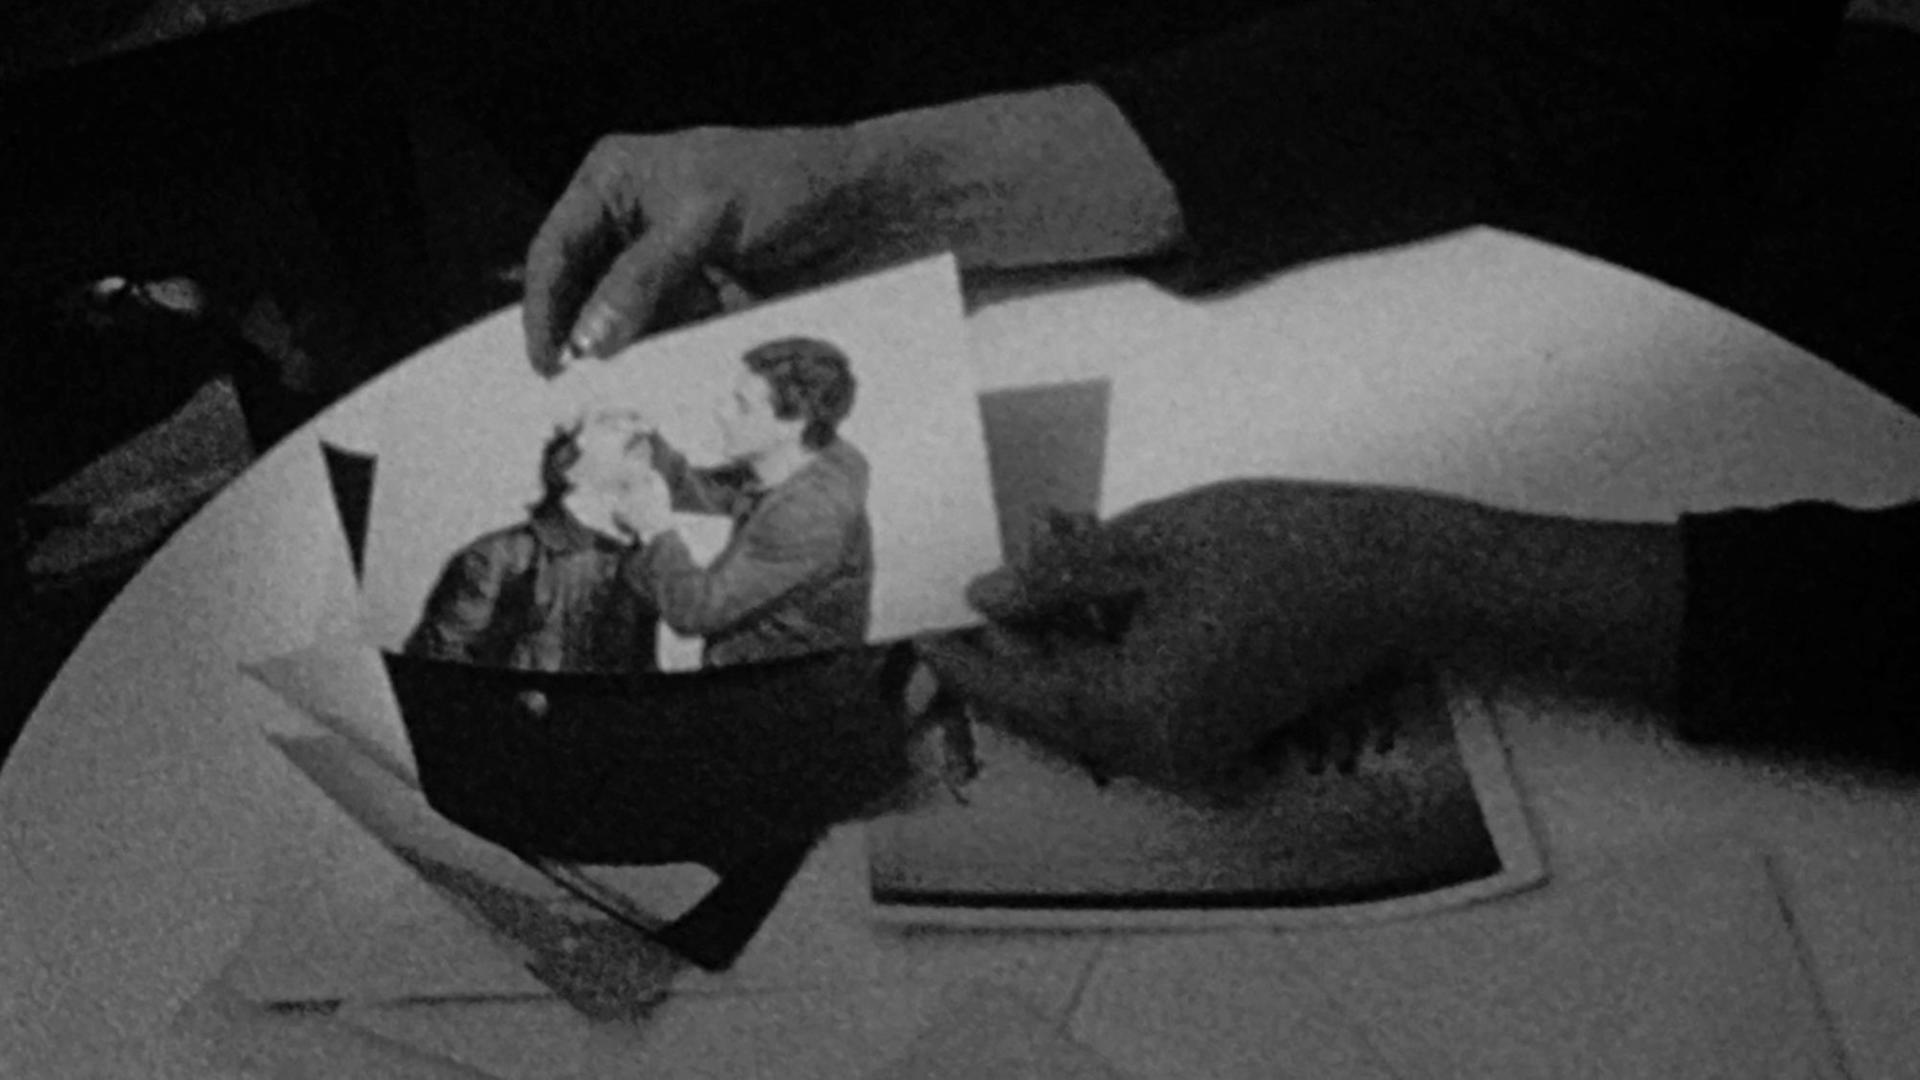 Auf dem Schwarz-Weiß-Filmstill sind die Hände einer Person zu sehen, die ein Foto halten. Courtesy: Cana Bilir-Meier, This Makes Me Want to Predict the Past, 2019 Super 8-Film, digitalisiert, s/w, Ton, 16:02 min